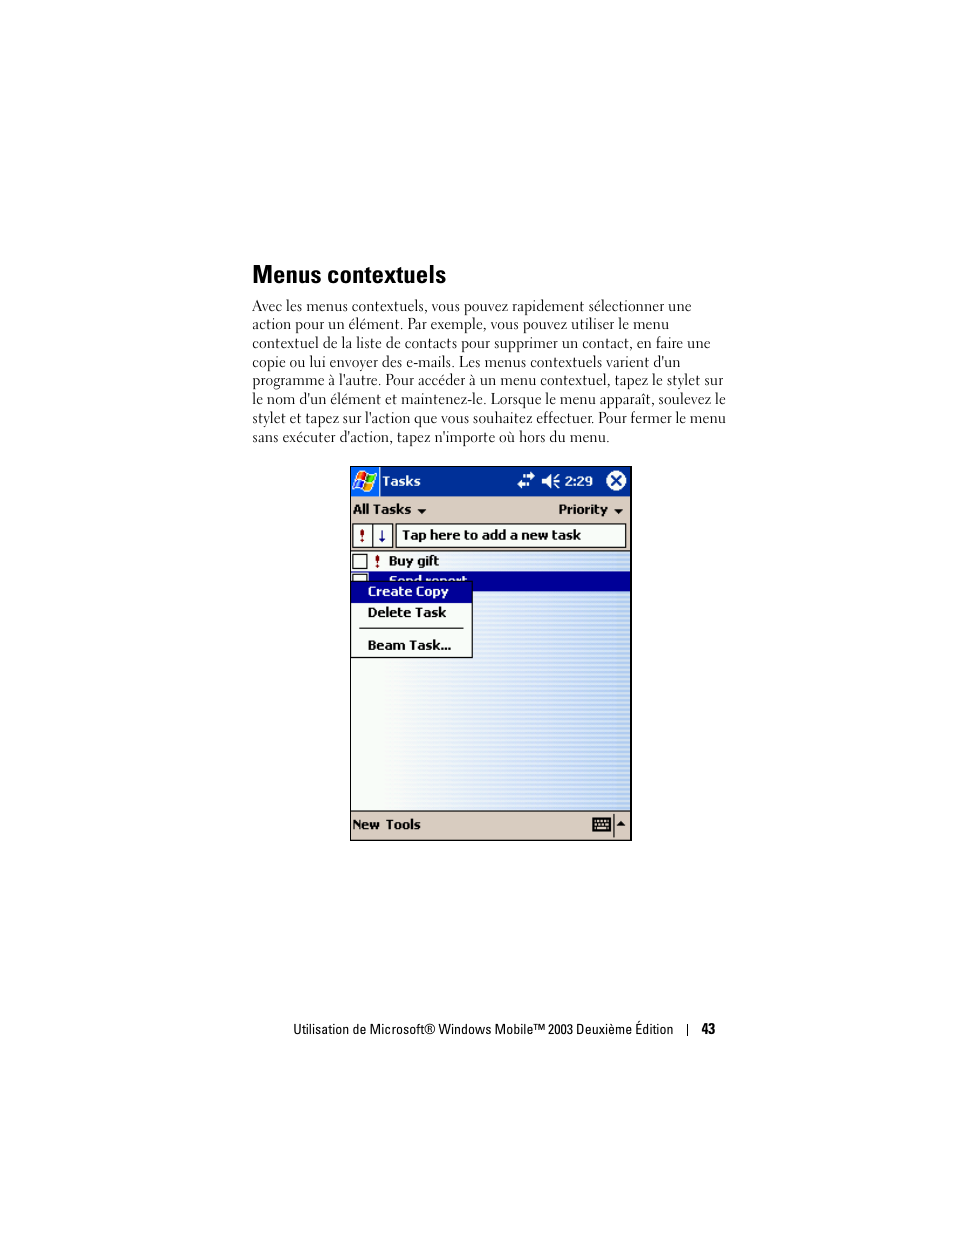 Menus contextuels | Dell AXIM X30 Manuel d'utilisation | Page 43 / 150